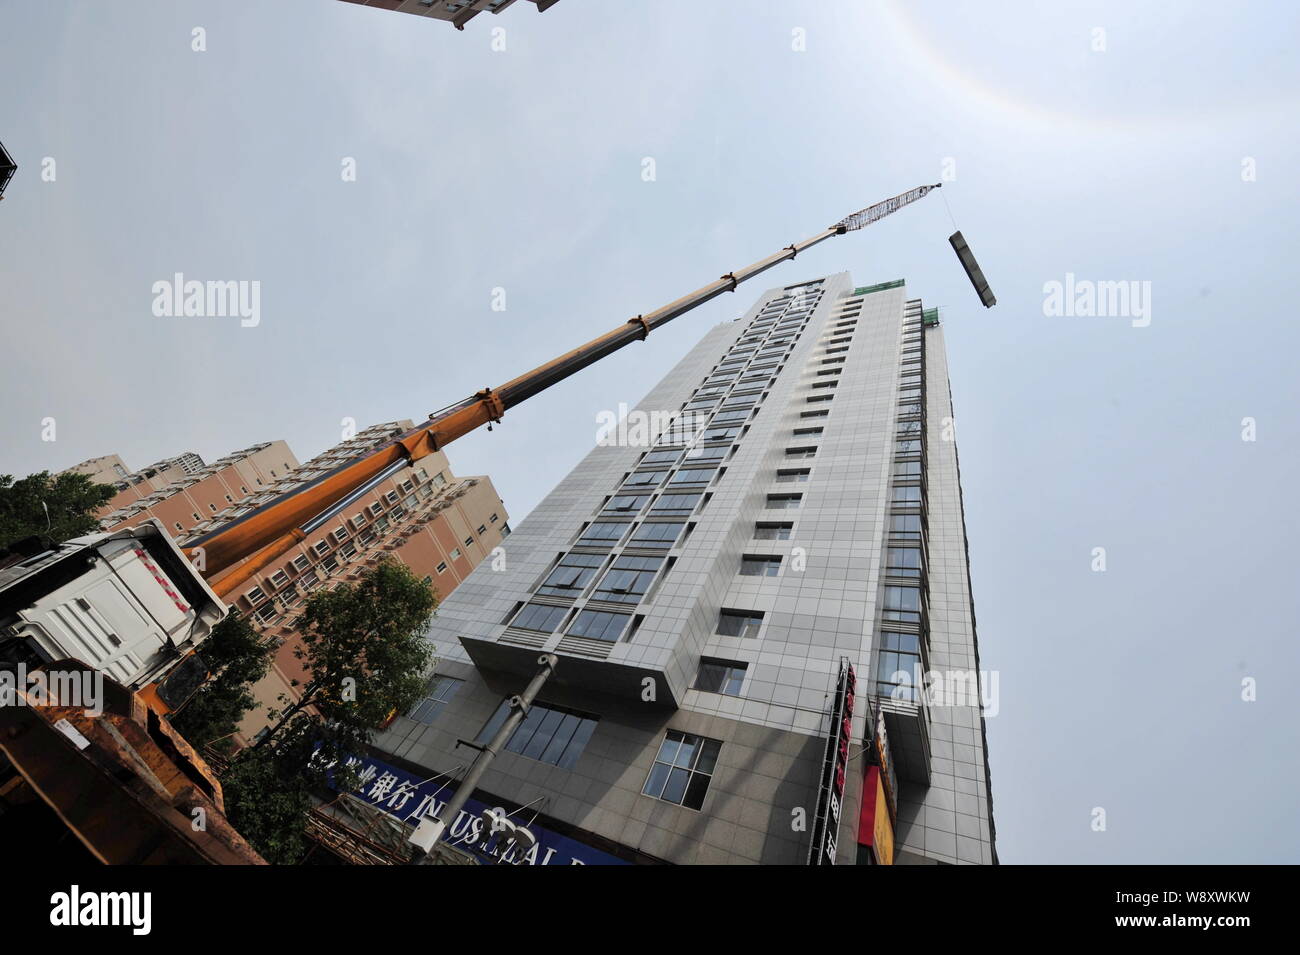 Un 260-ton heavy-duty gru viene utilizzata per demolire un illegalmente-costruzione sul tetto di un alto edificio di uffici a Pechino in Cina, 24 giu Foto Stock